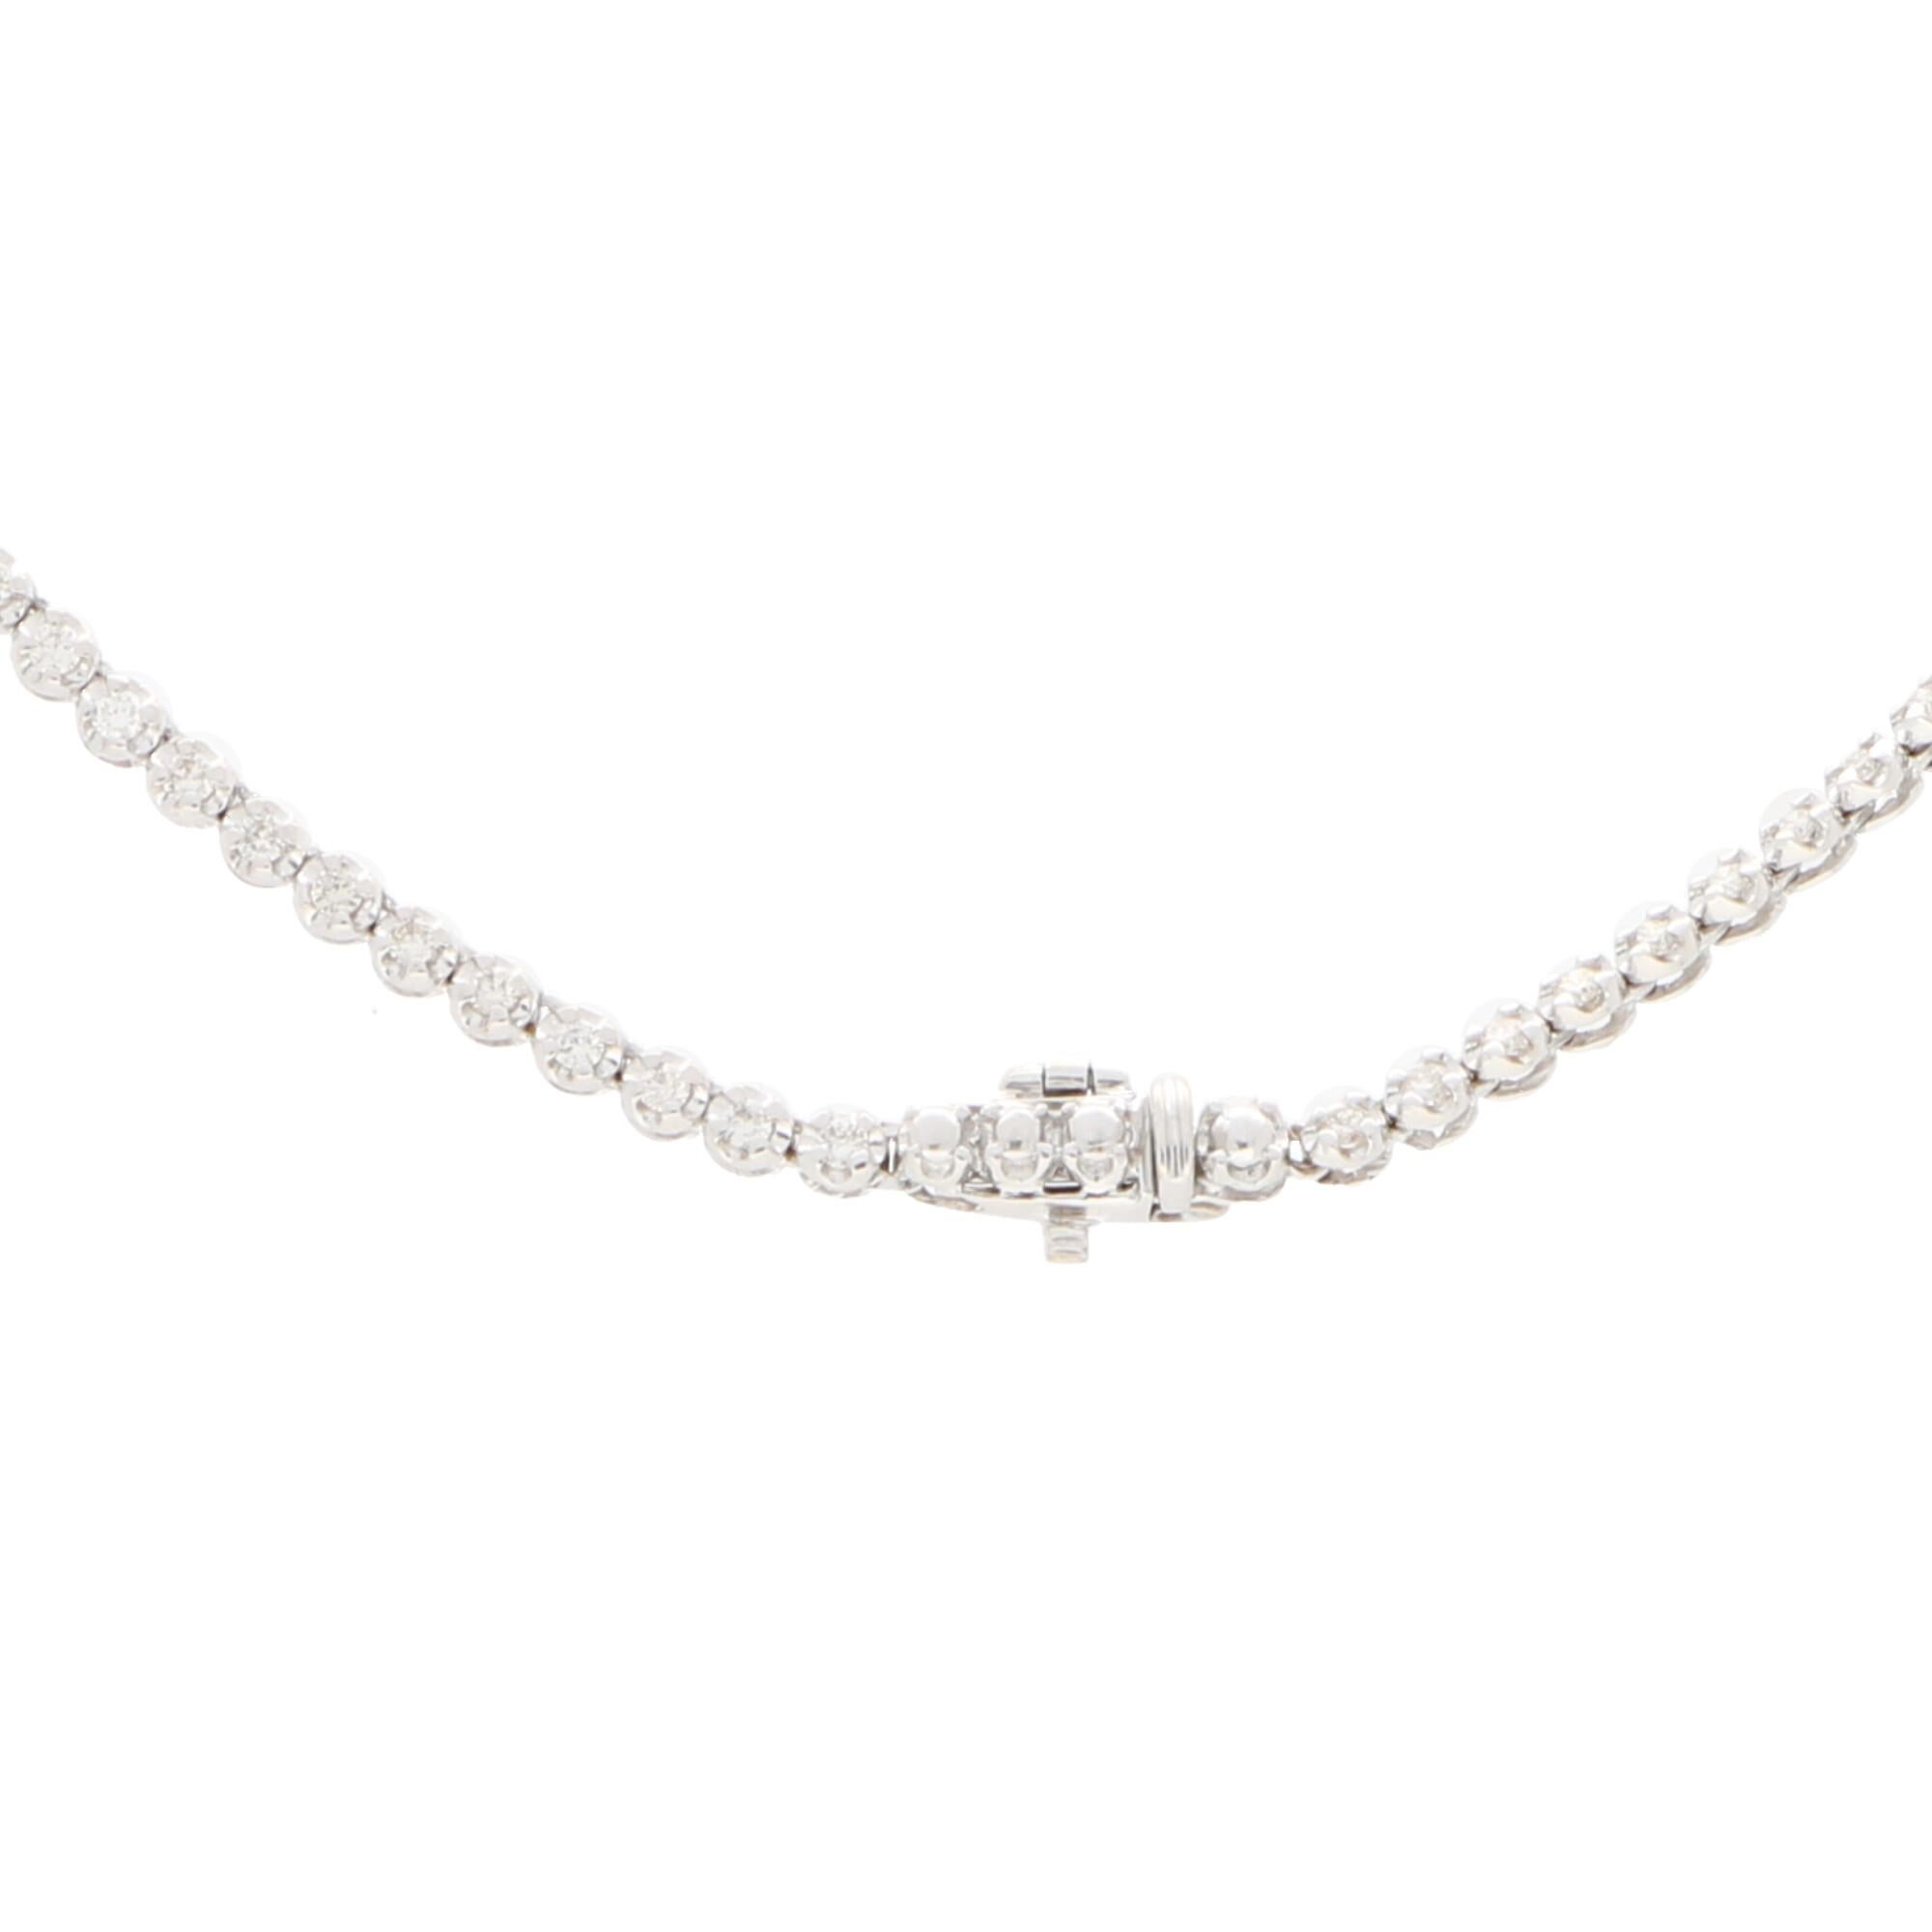 Round Cut Diamond Riviere Necklace Set in 18 Karat White Gold